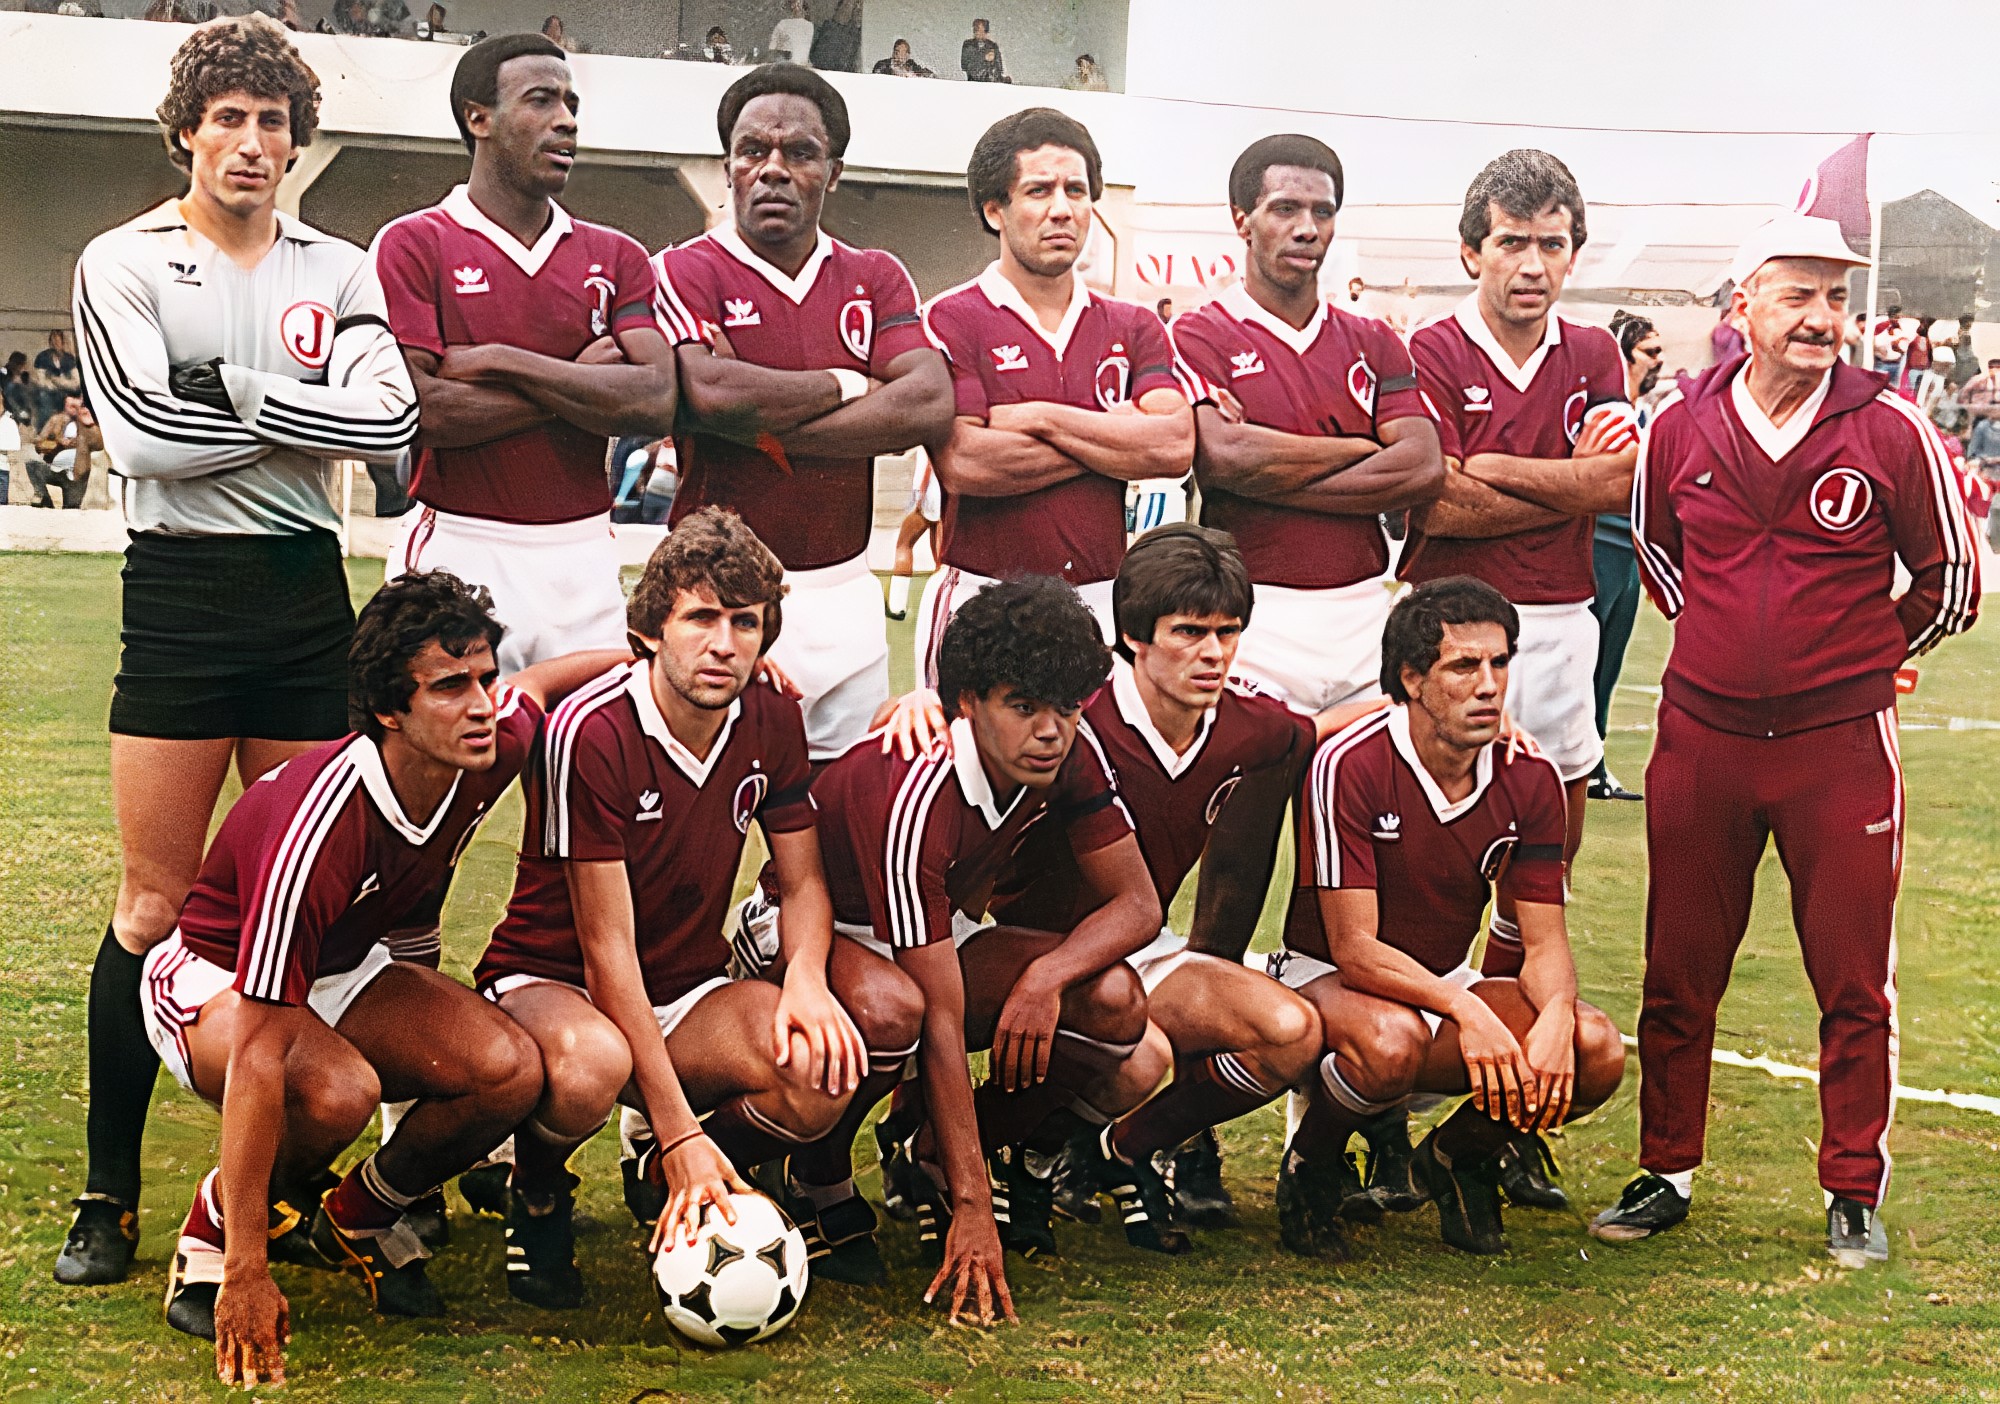 Campeões da Segunda Divisão do Campeonato Paulista (1960 - 2022